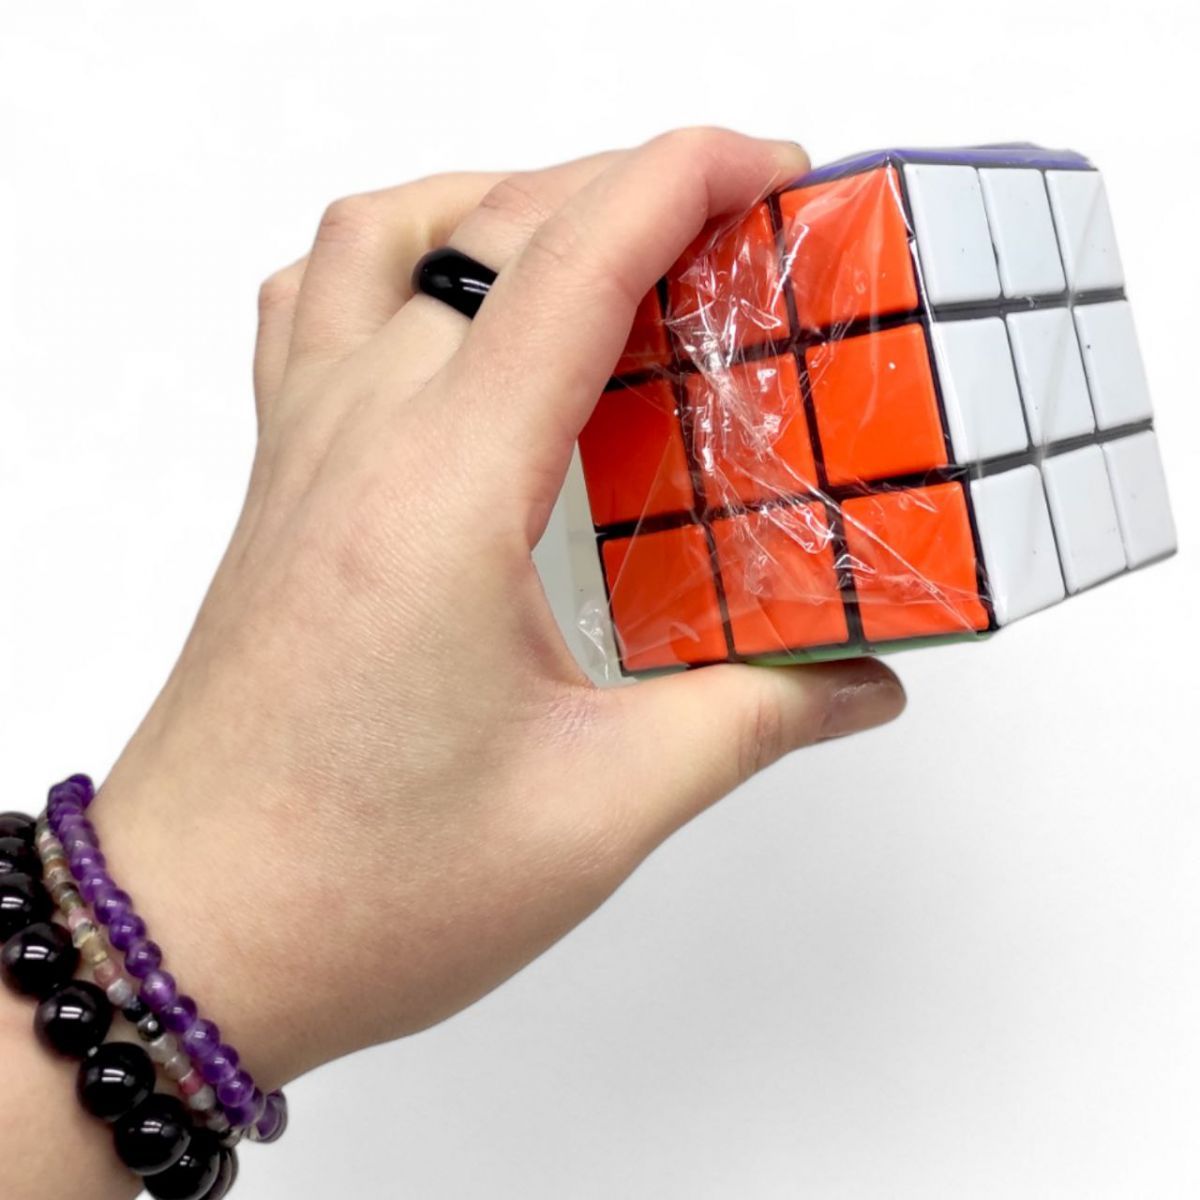 Кубик Рубіка "Мега Куб IQ", 3x3; 5,5 см